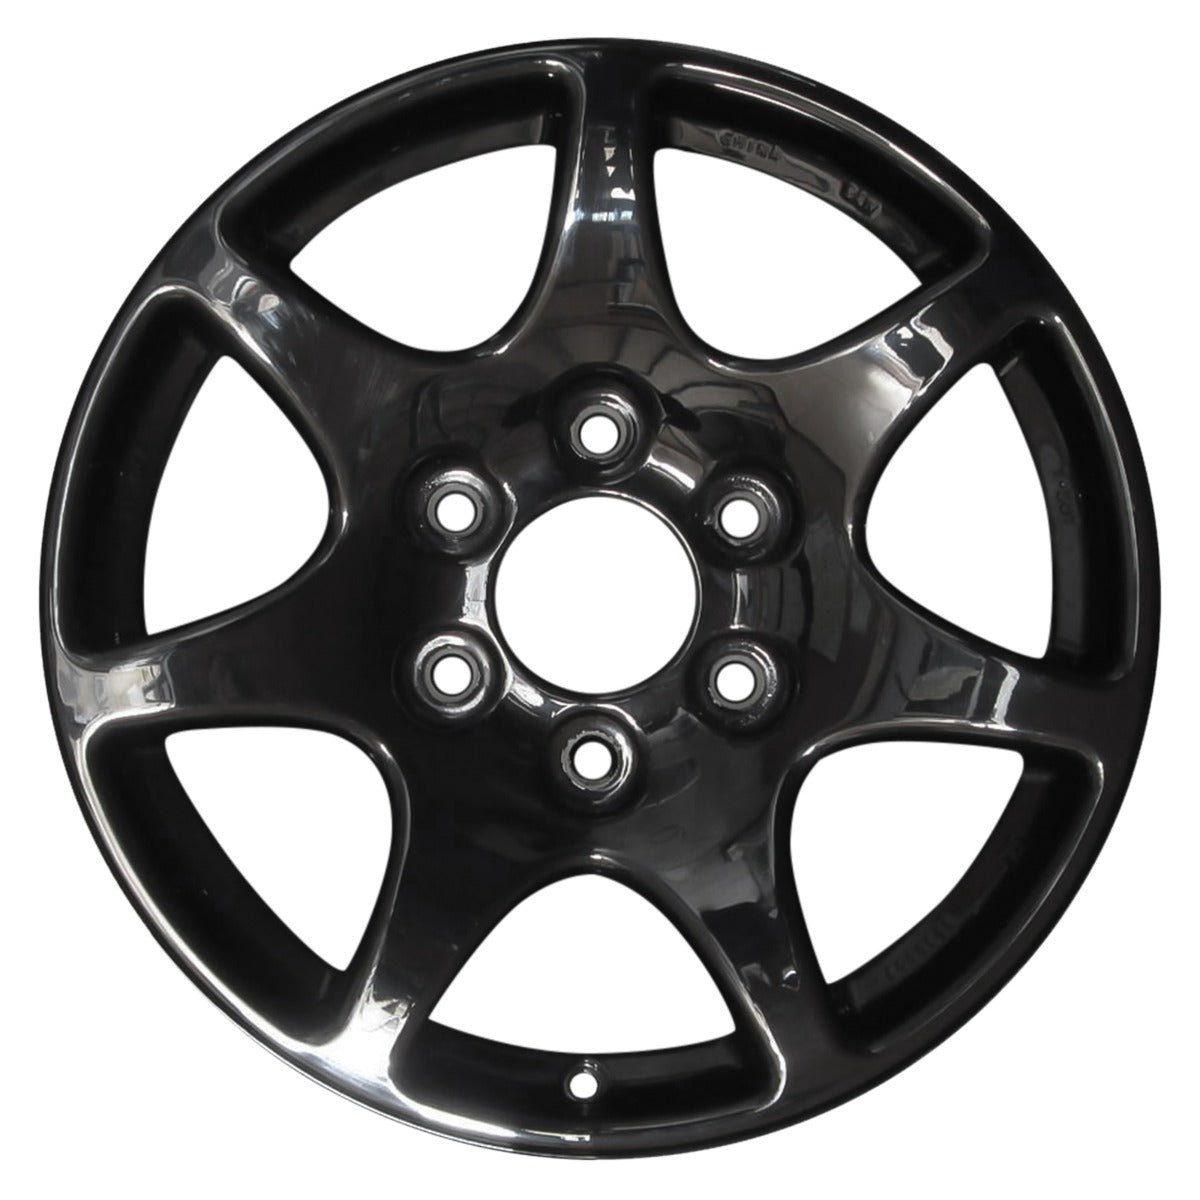 2014 Chevrolet Silverado 1500 17" OEM Wheel Rim W5292B